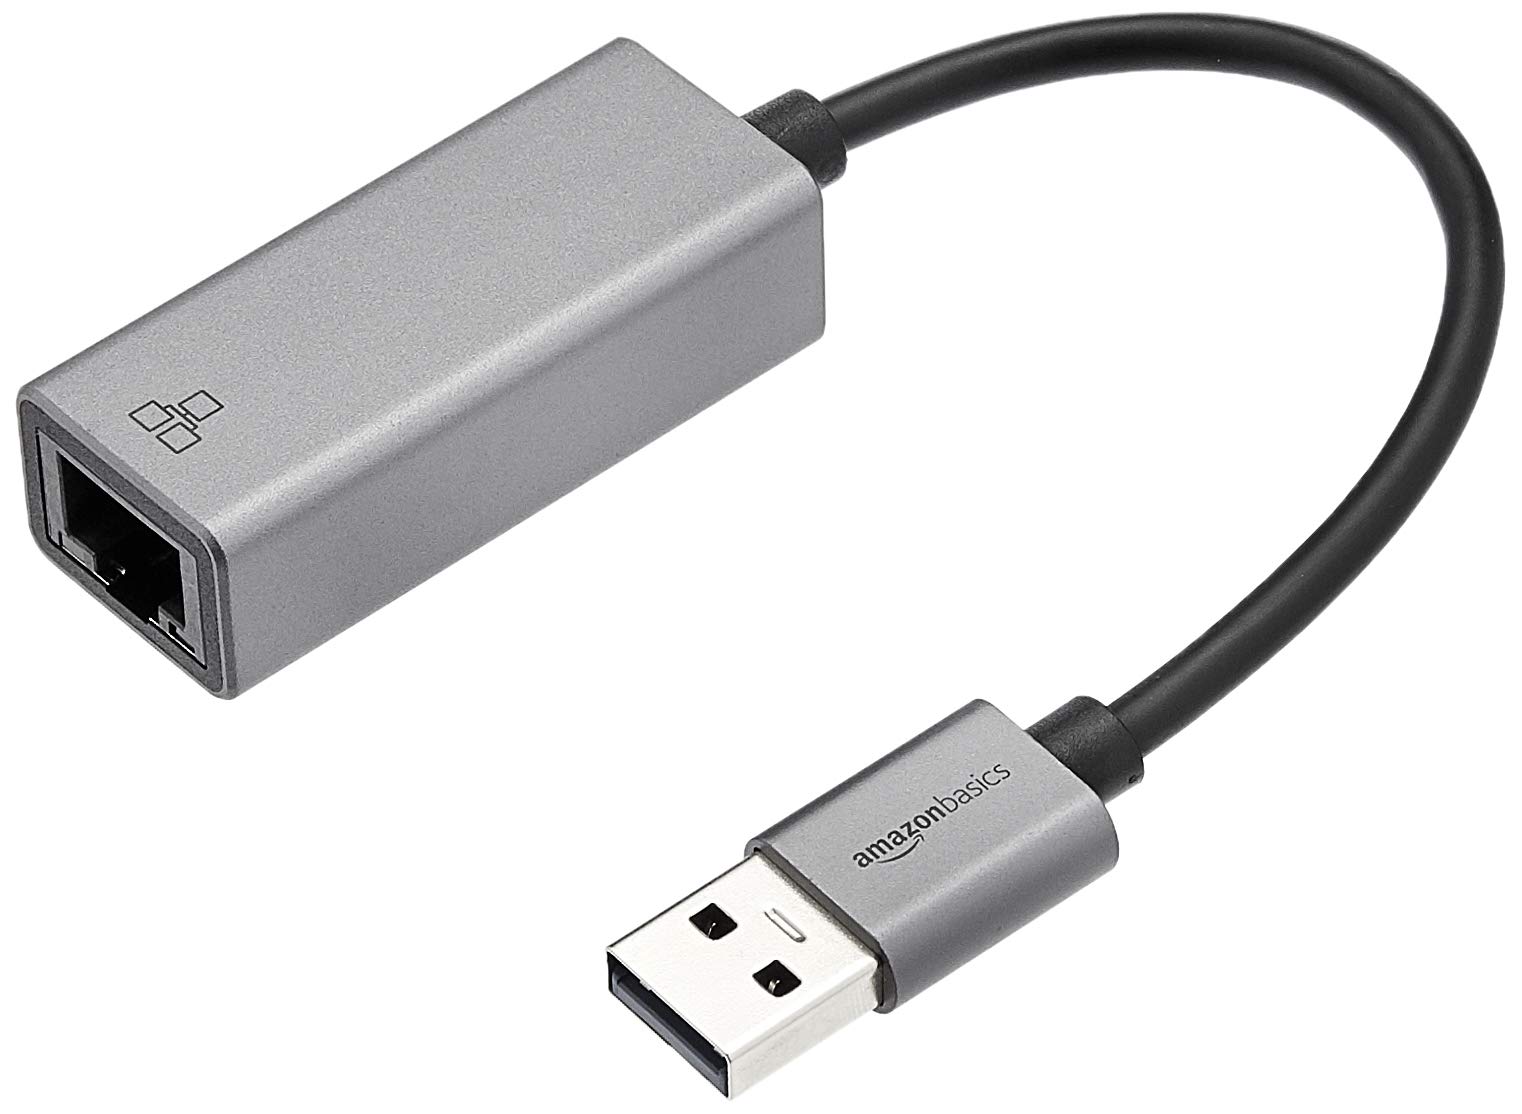 Amazon Basics Aluminum USB 3.0 Gigabit Ethernet Adapter, Gray